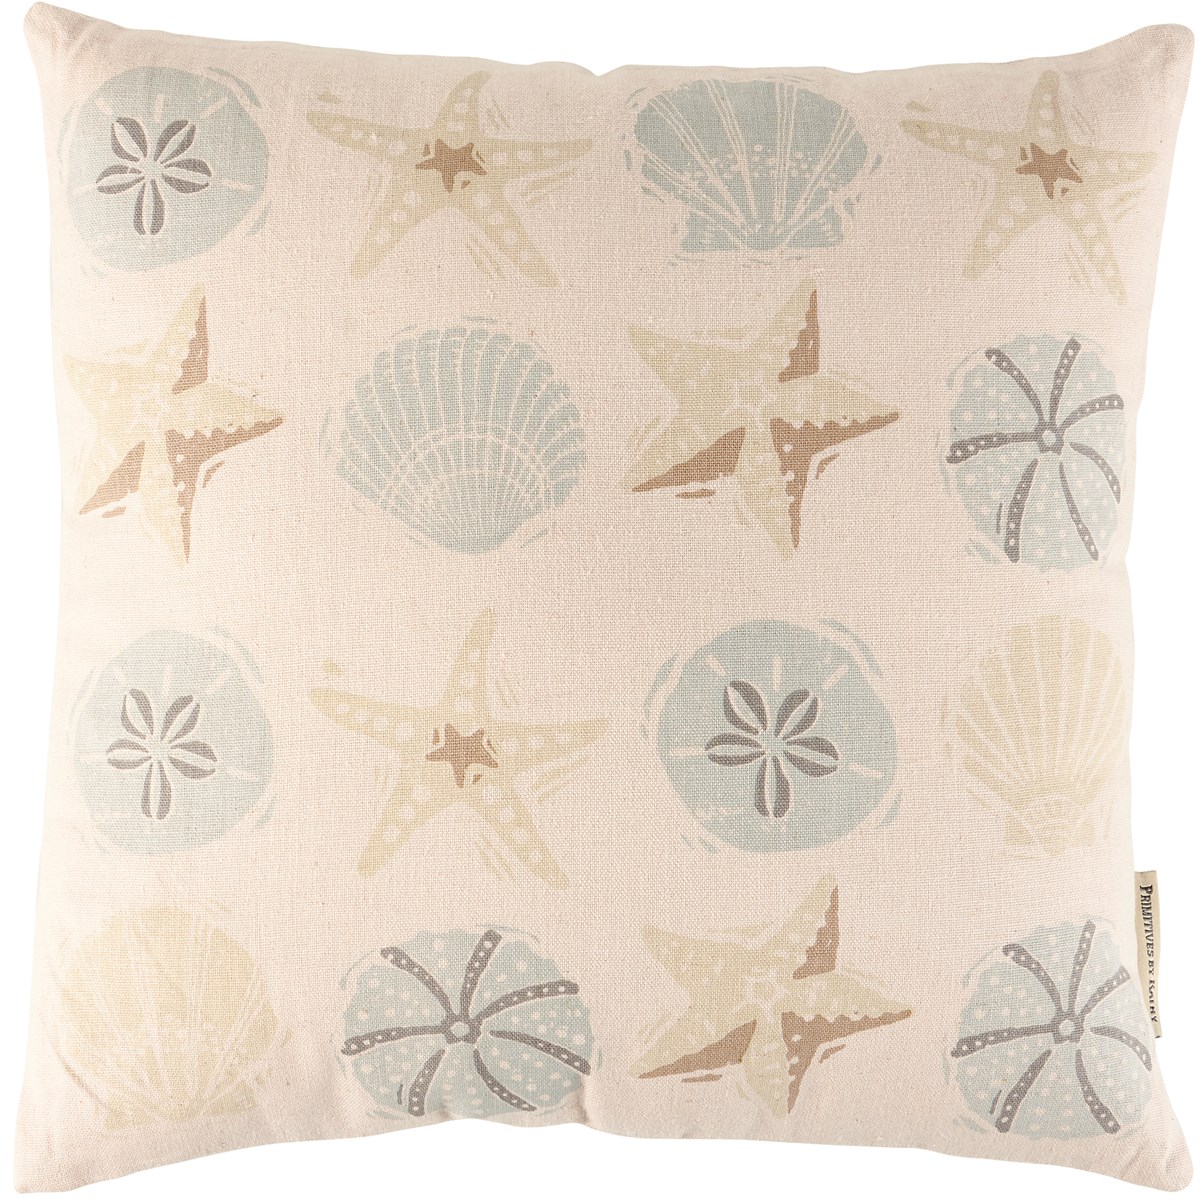 Seashells Pillow - Cotton, Linen, Zipper